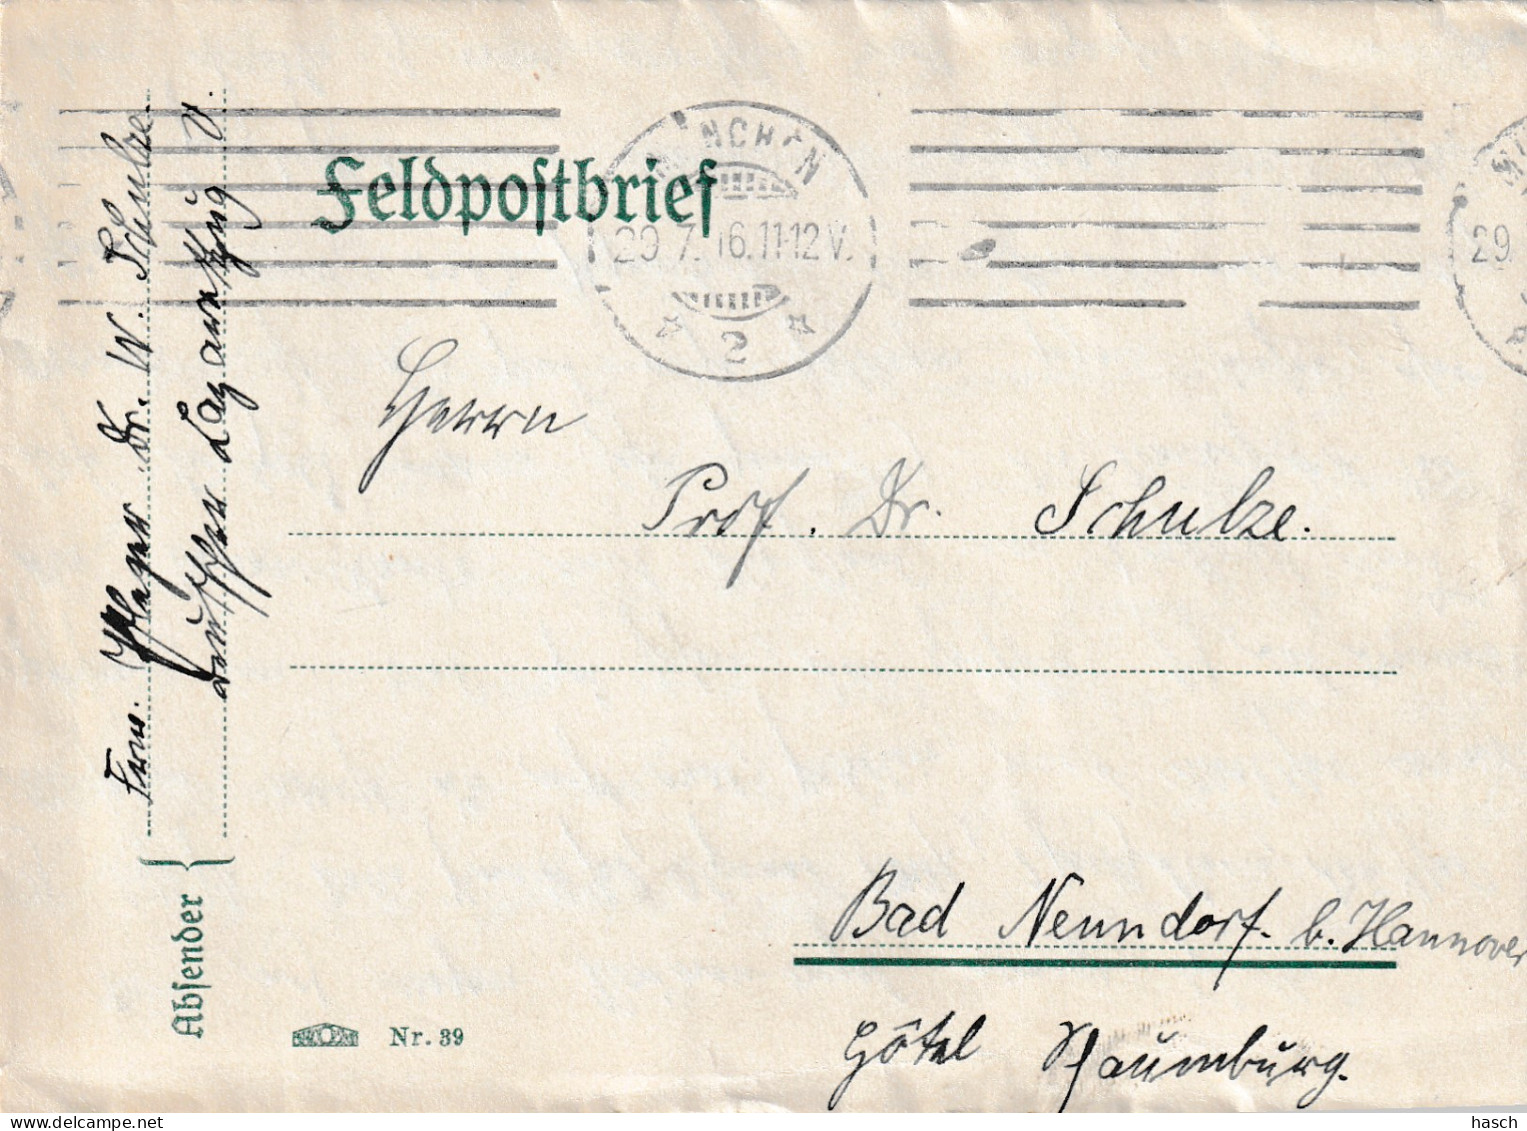 4935 46 Feldpostbrief 29-07-1916 München 2- Bad Nenndorf. Absender Dr Schulze, Krankenpfleger Deutsche - Weltkrieg 1914-18